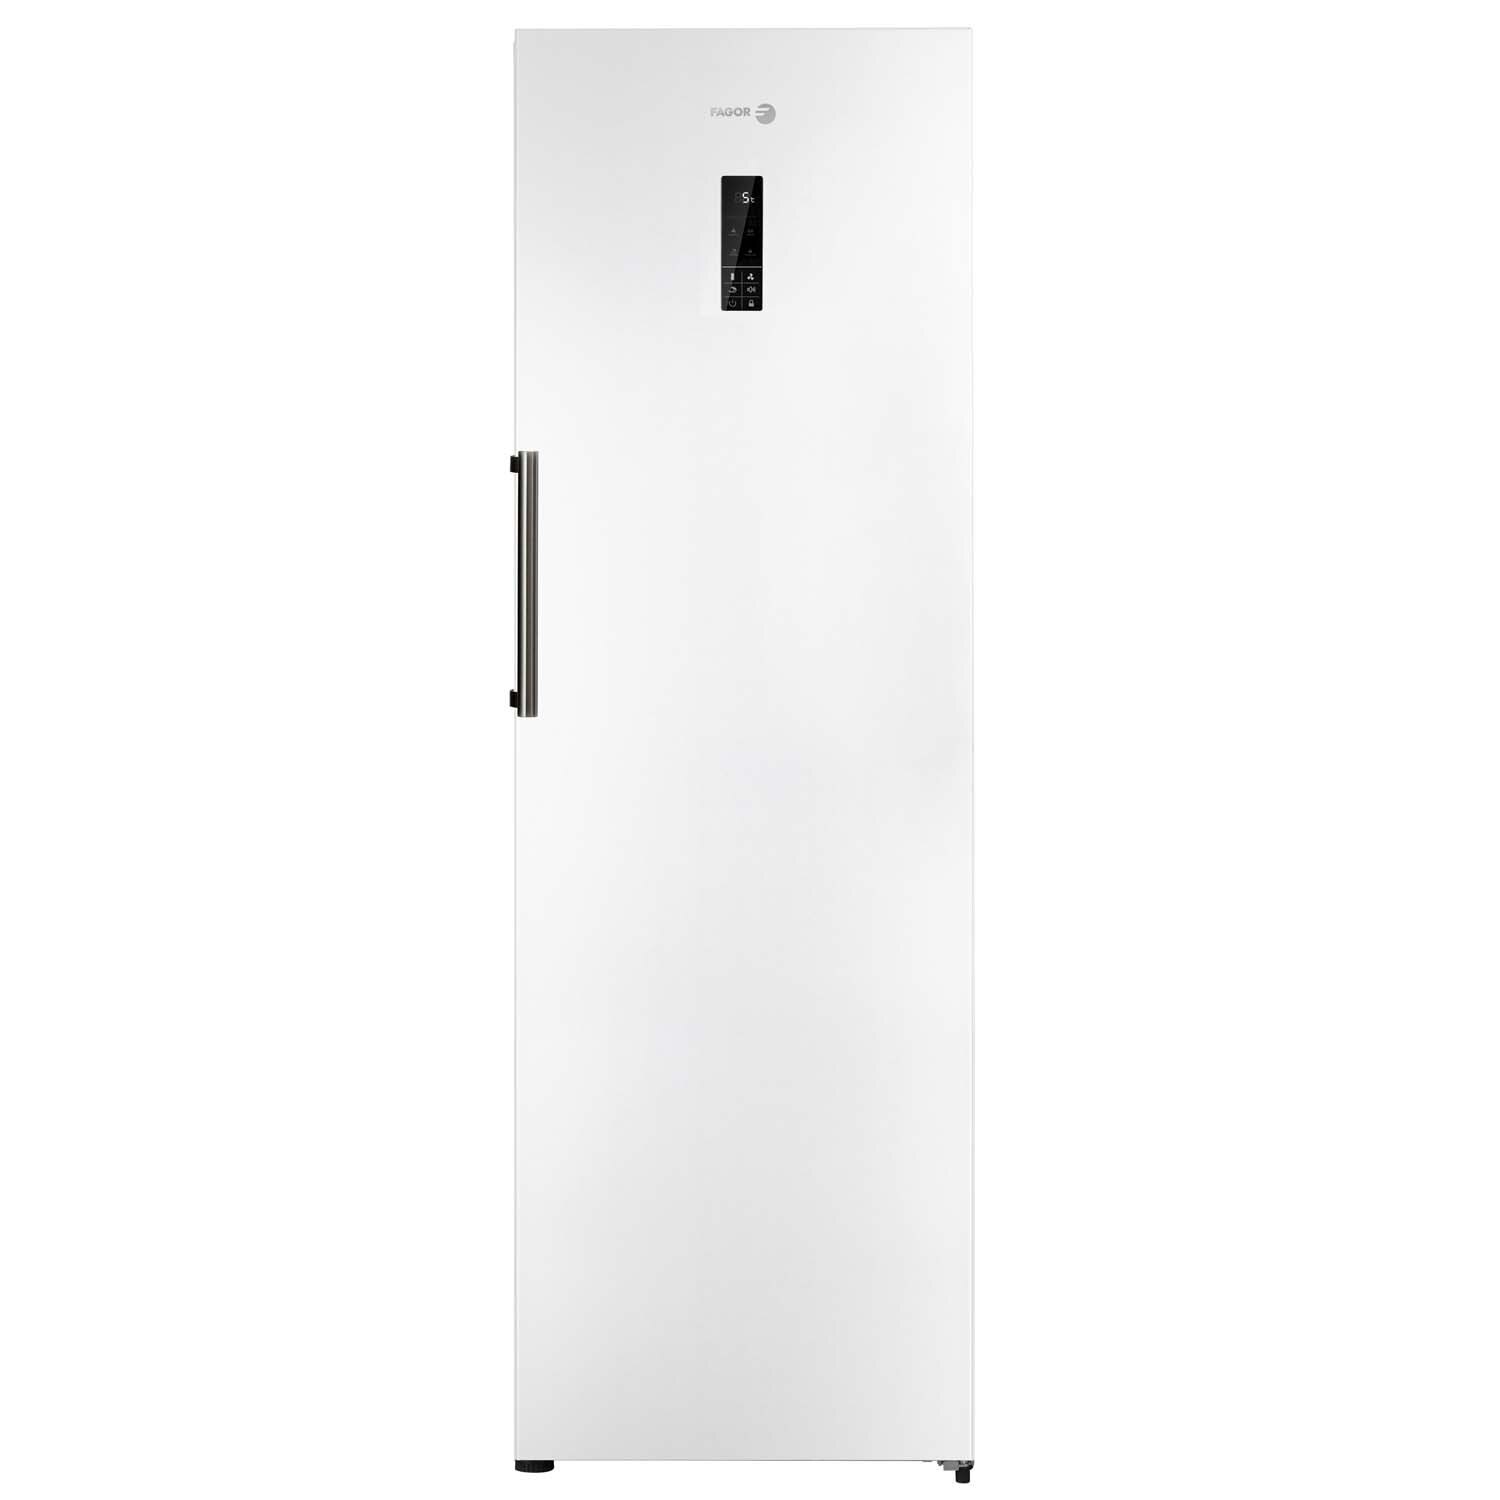 Хладилник Fagor FFK-1677A с обем от 360 л.